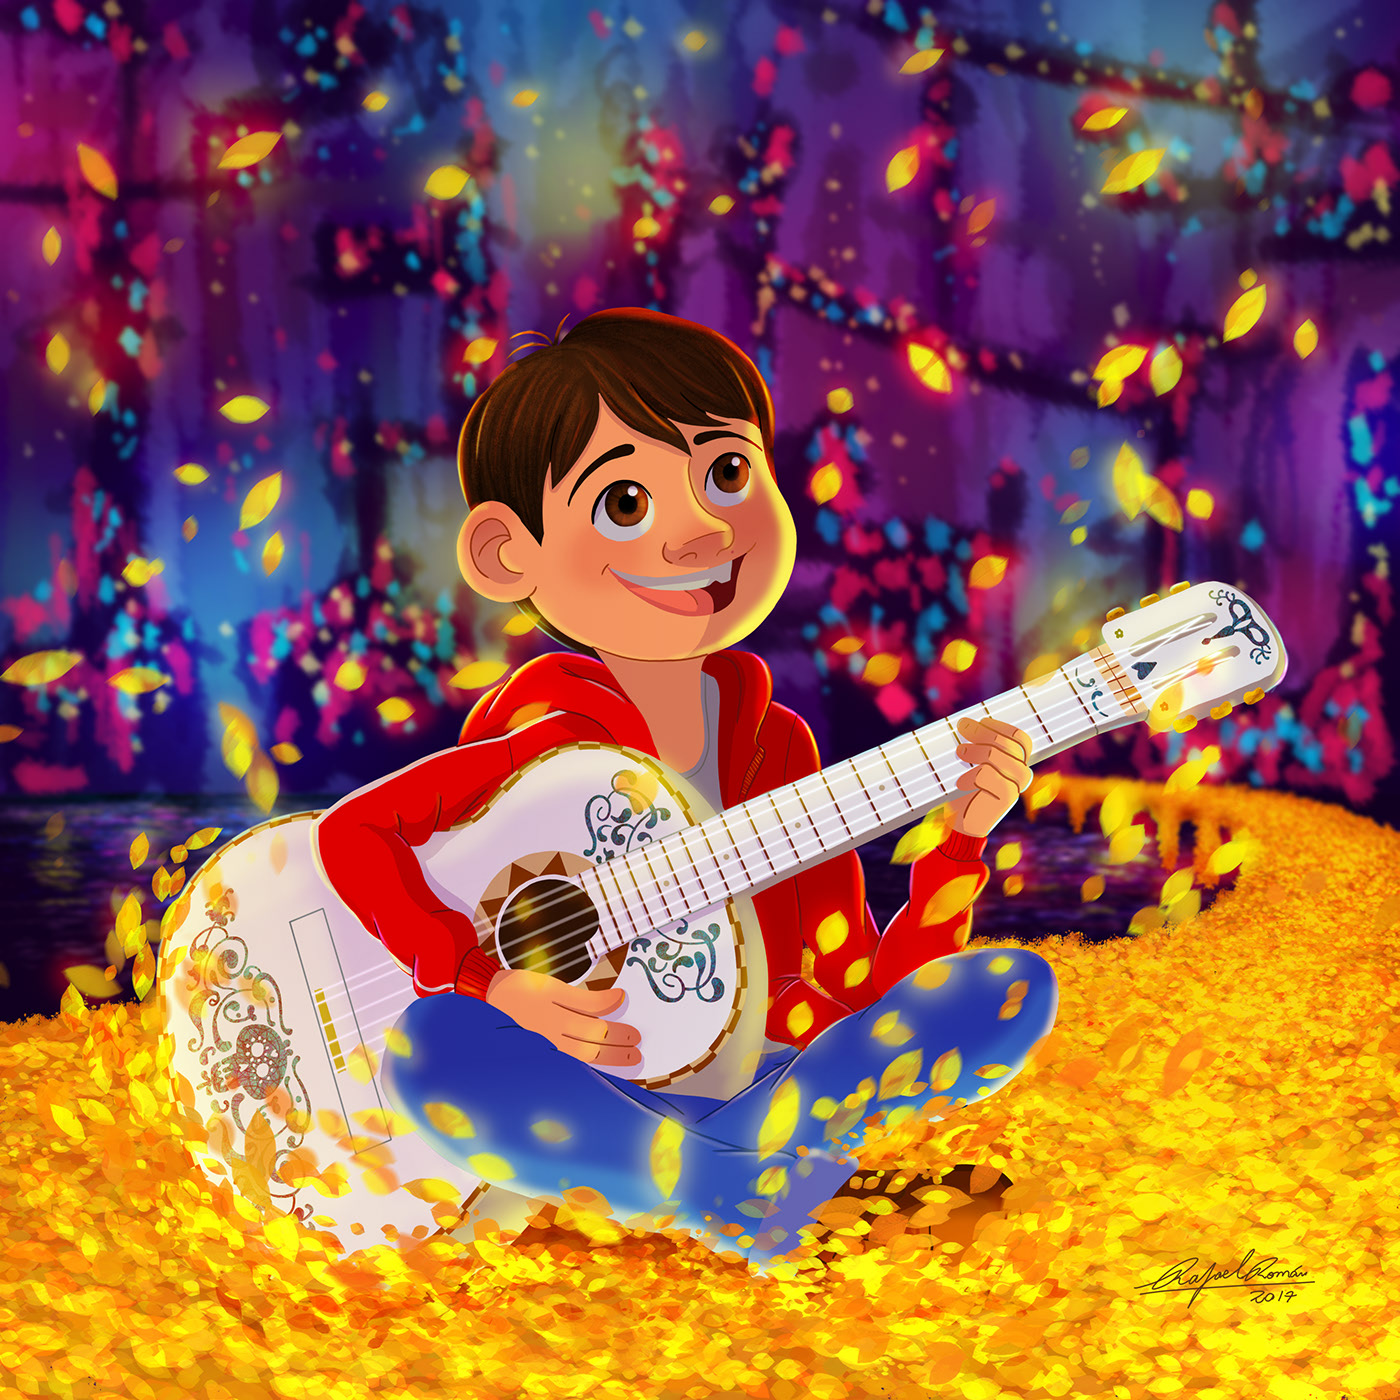 Coco disney pixar guitar dia de los muertos mexico fanart ILLUSTRATION adob...